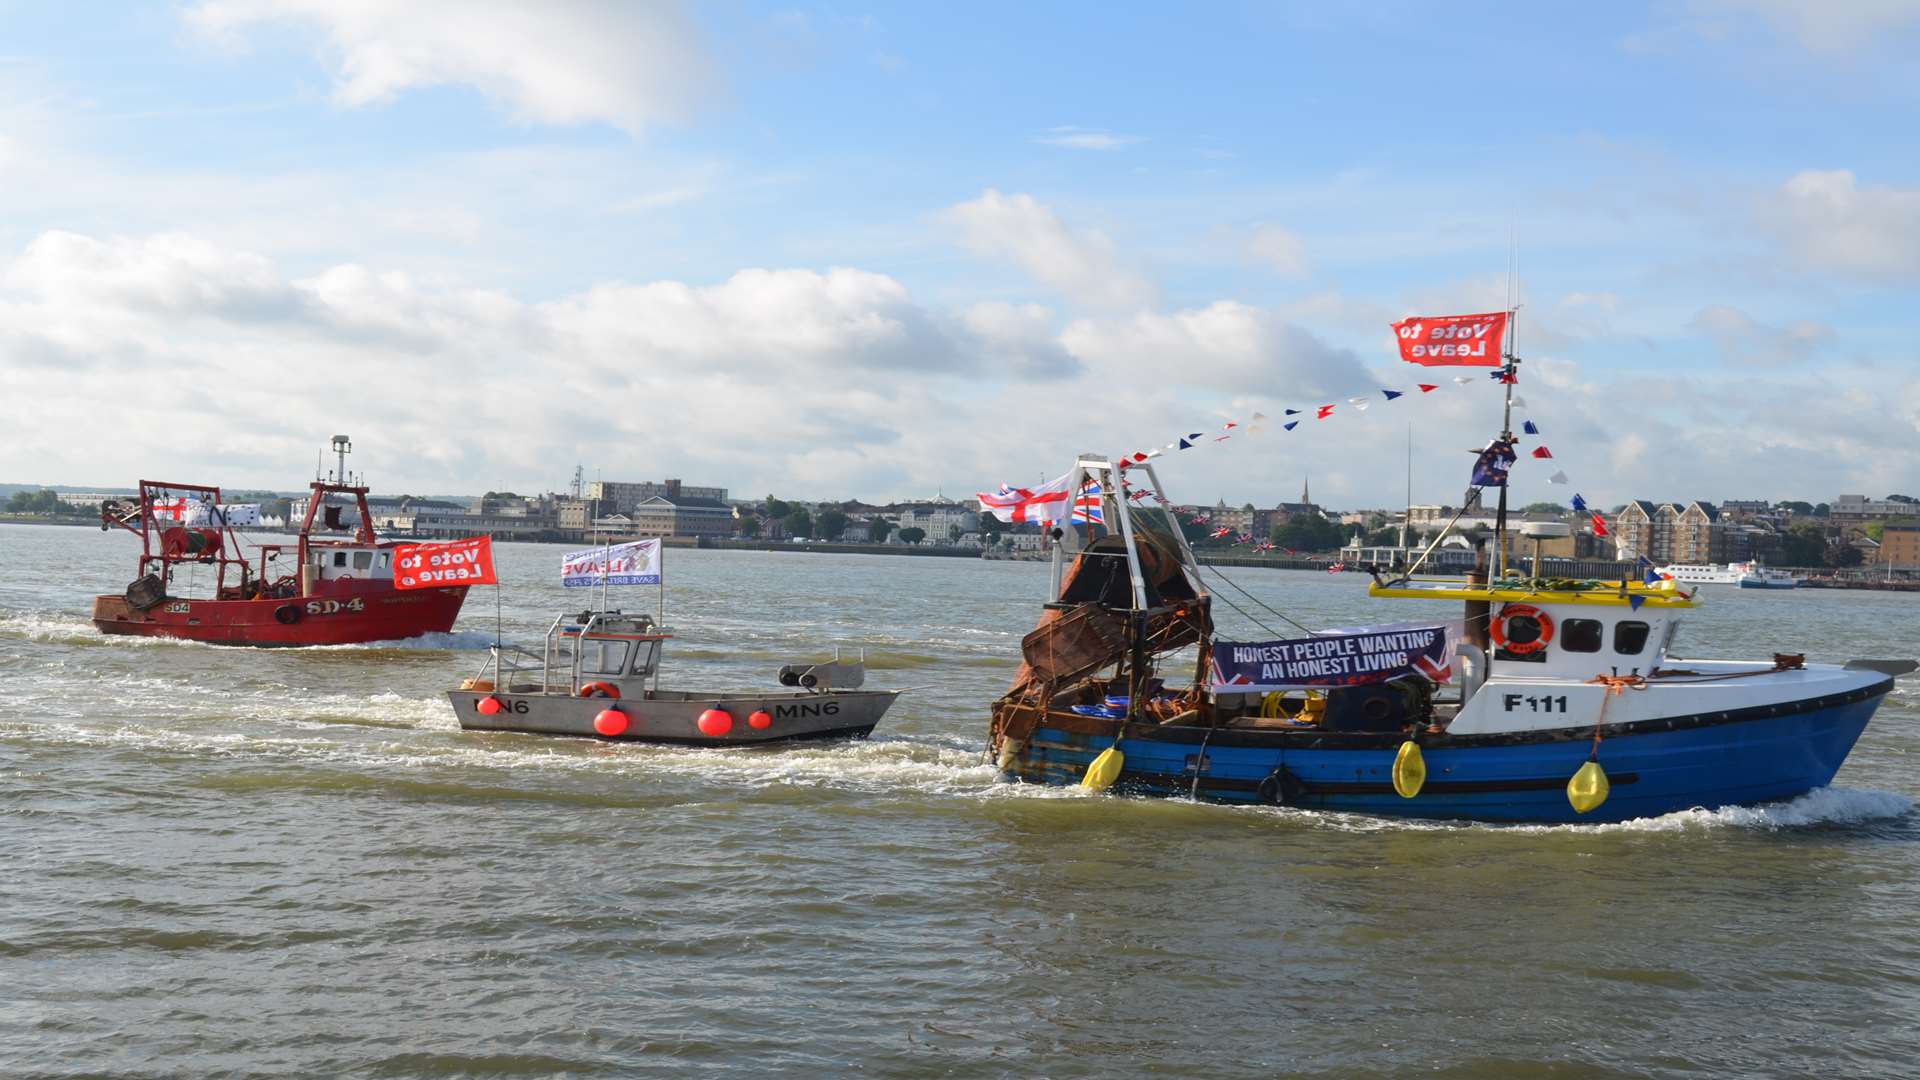 The Brexit campaign flotilla sailed past Gravesend en route to Parliament. Photo by Jason Arthur